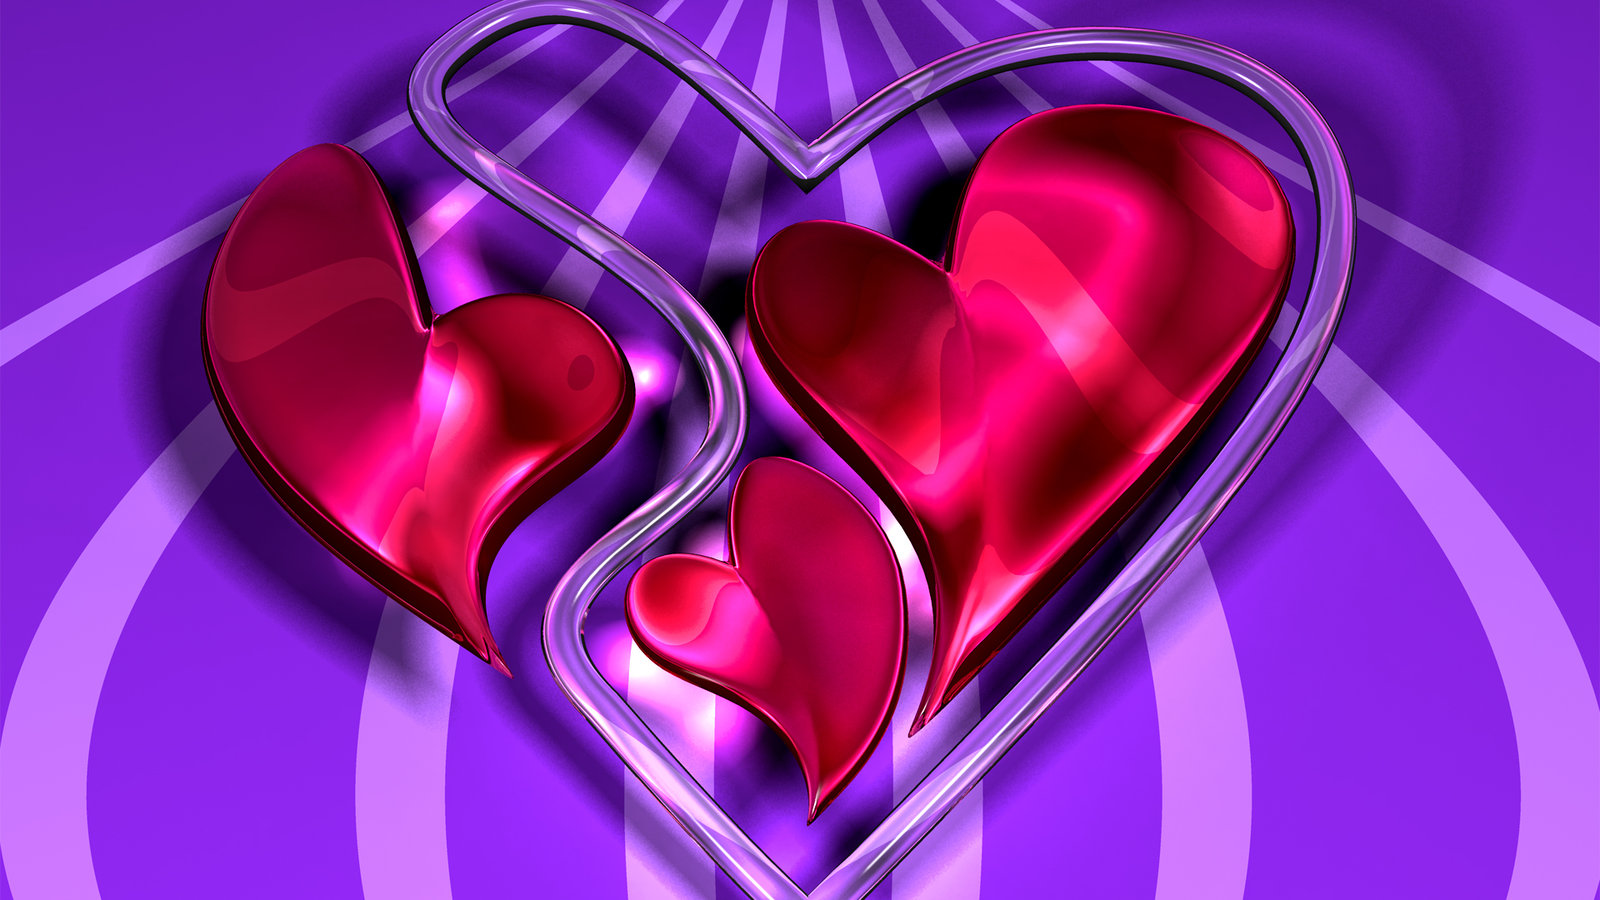 Love Hearts by TylerXy on DeviantArt